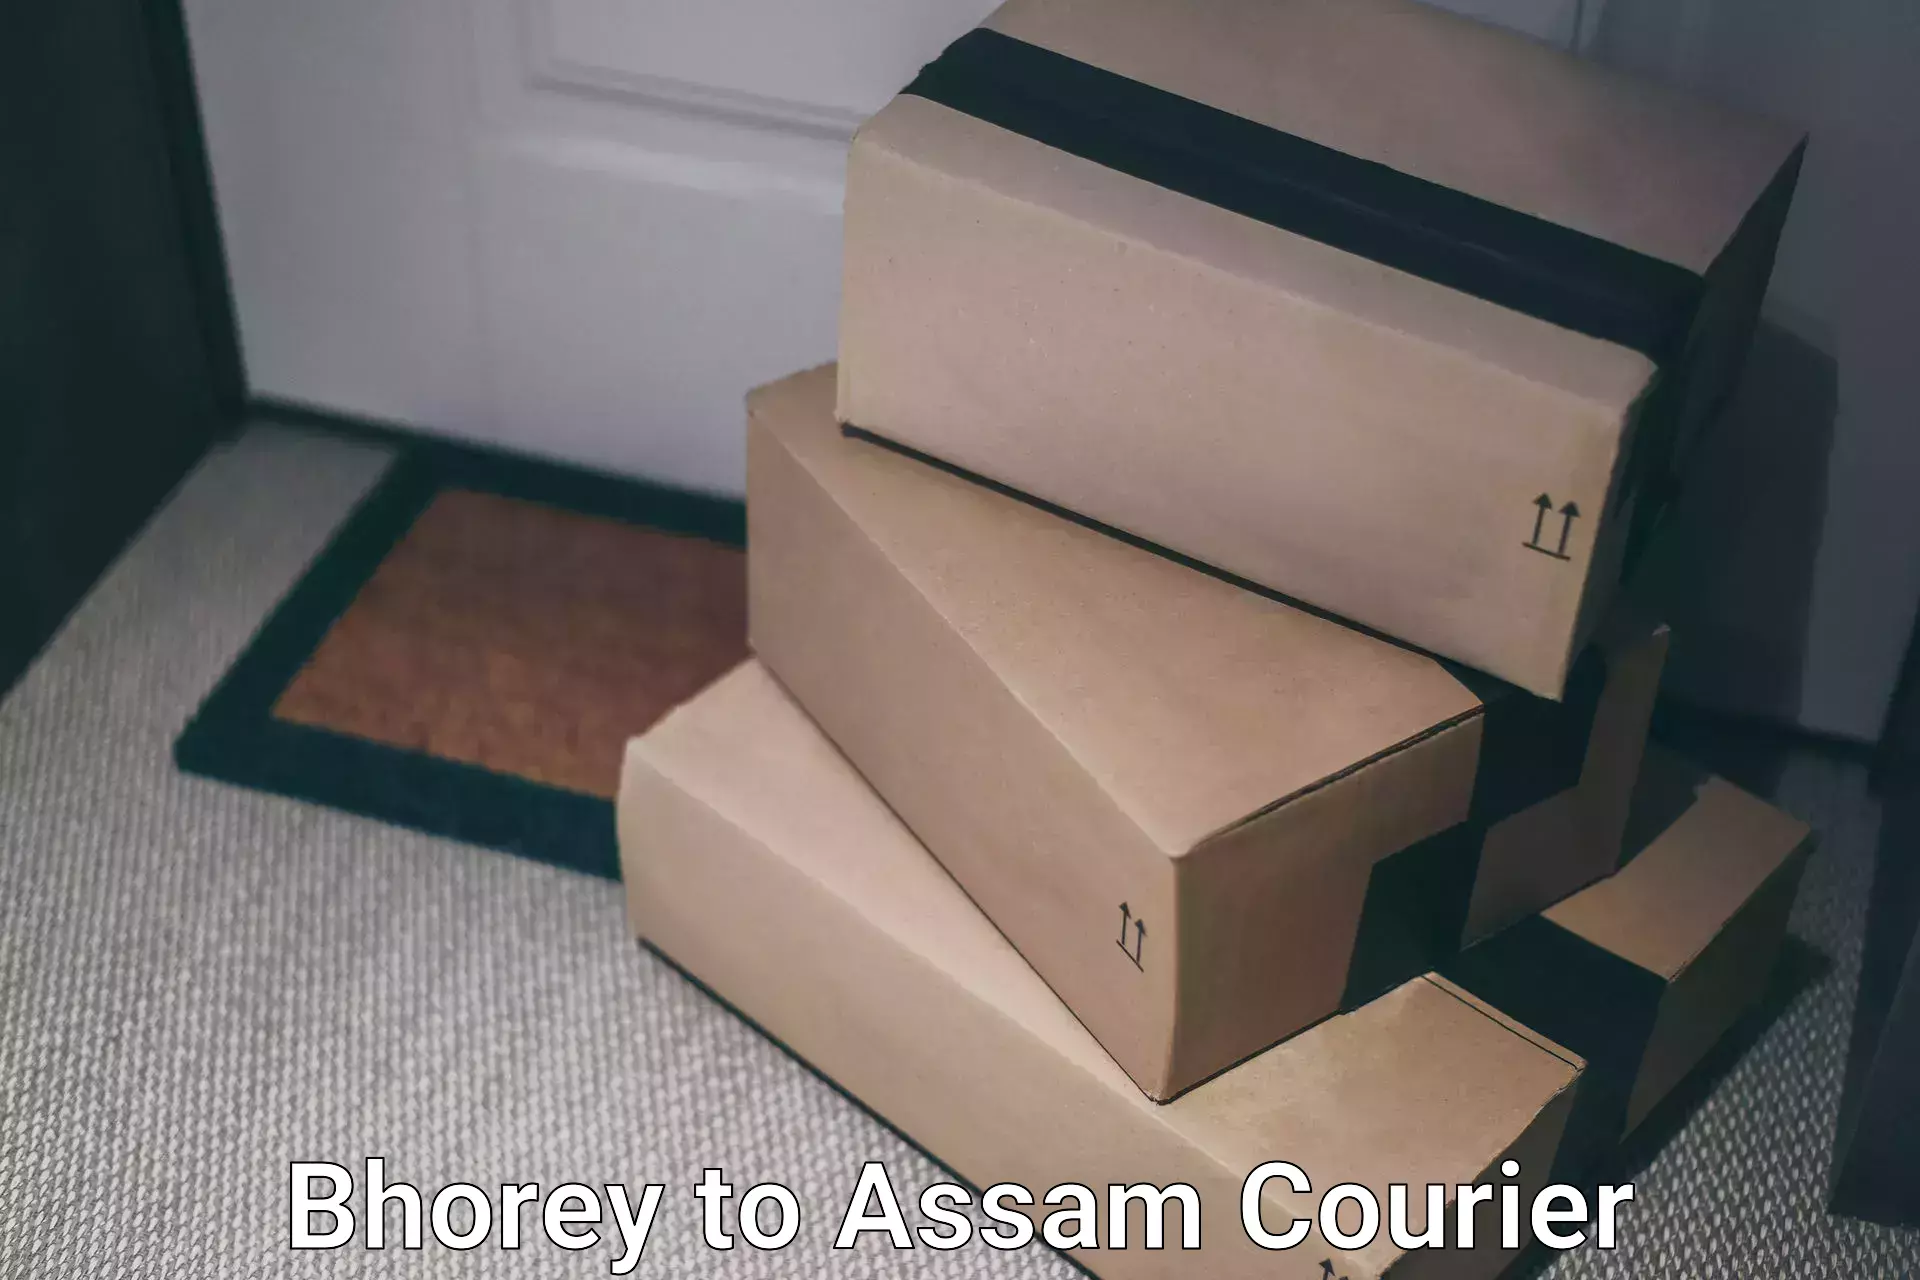 Courier service comparison Bhorey to Assam University Silchar